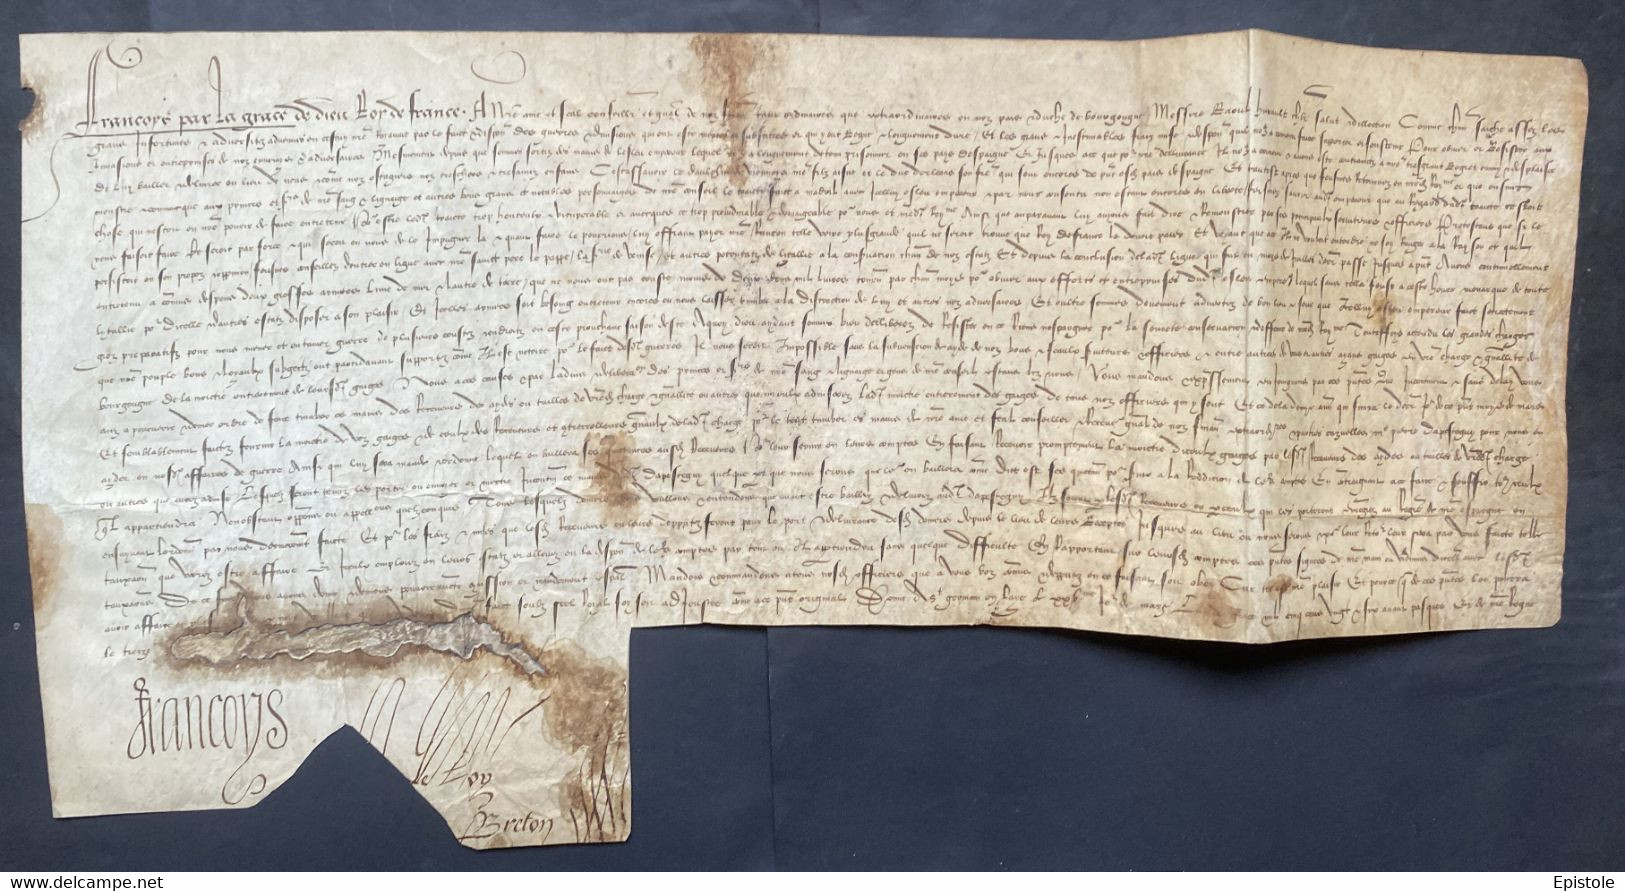 FRANÇOIS Ier Roi De France – Lettre Signée – Guerre Vs Charles Quint, Captivité Et Otages - 1526 - Personnages Historiques